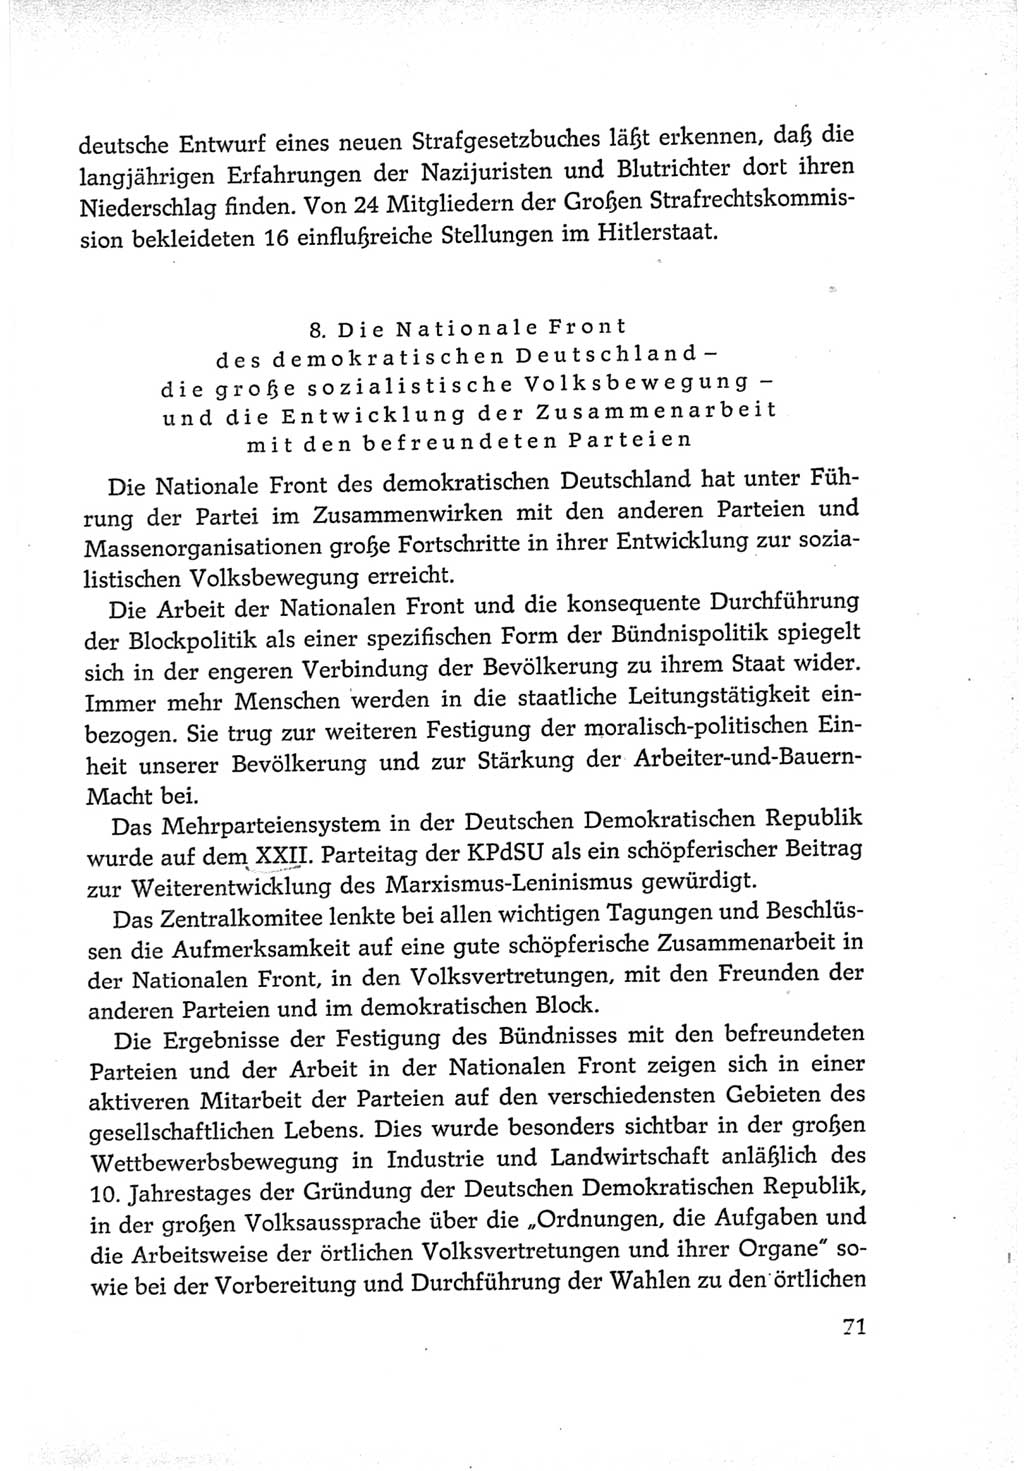 Protokoll der Verhandlungen des Ⅵ. Parteitages der Sozialistischen Einheitspartei Deutschlands (SED) [Deutsche Demokratische Republik (DDR)] 1963, Band Ⅳ, Seite 71 (Prot. Verh. Ⅵ. PT SED DDR 1963, Bd. Ⅳ, S. 71)